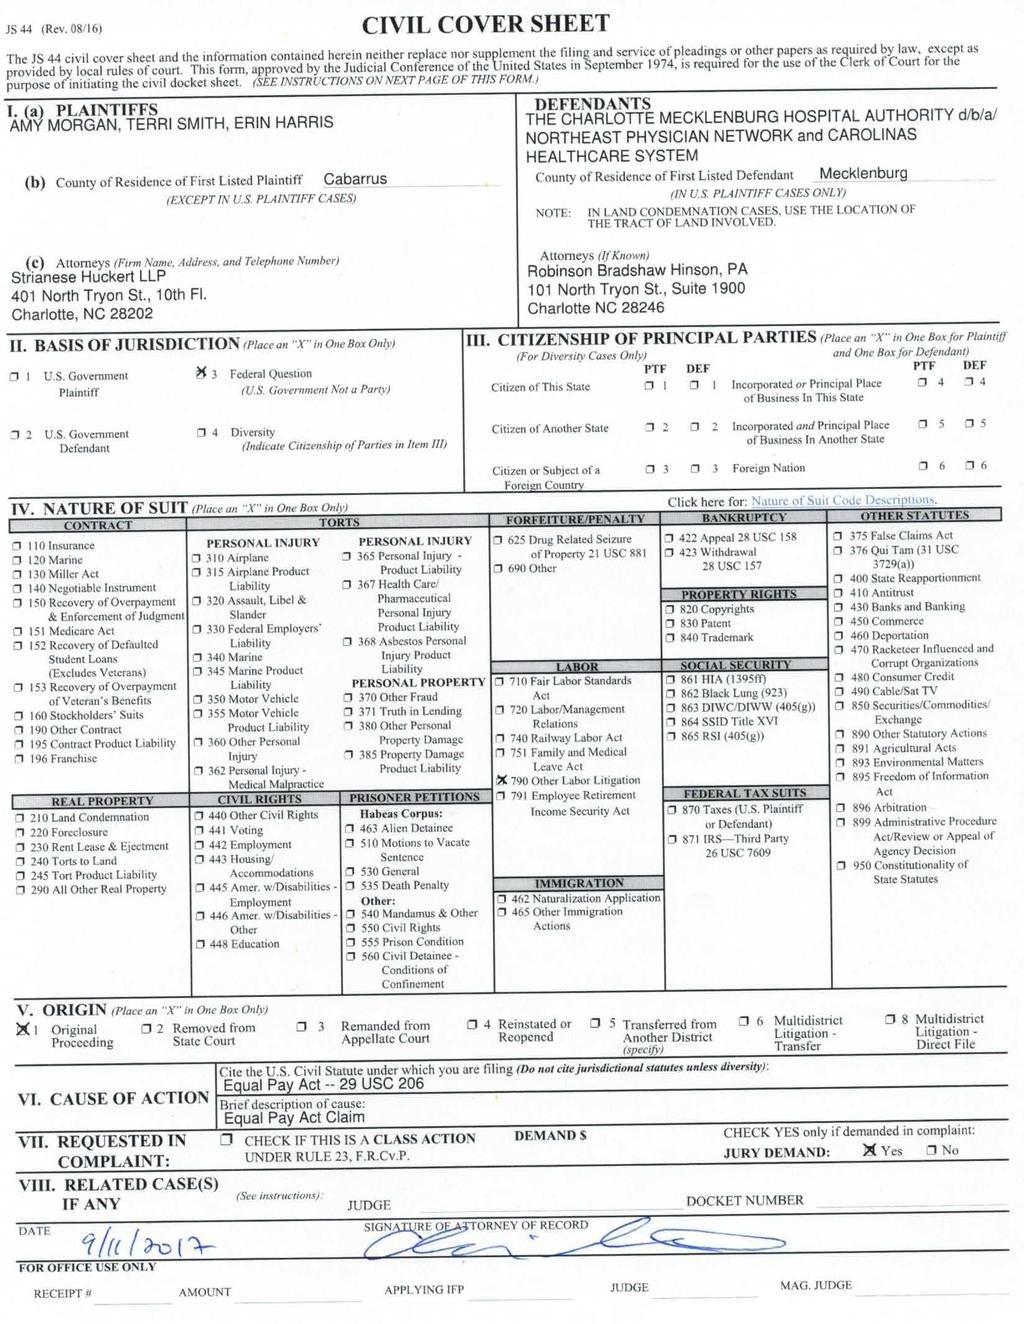 Case 317-cv-00540-GCM Document